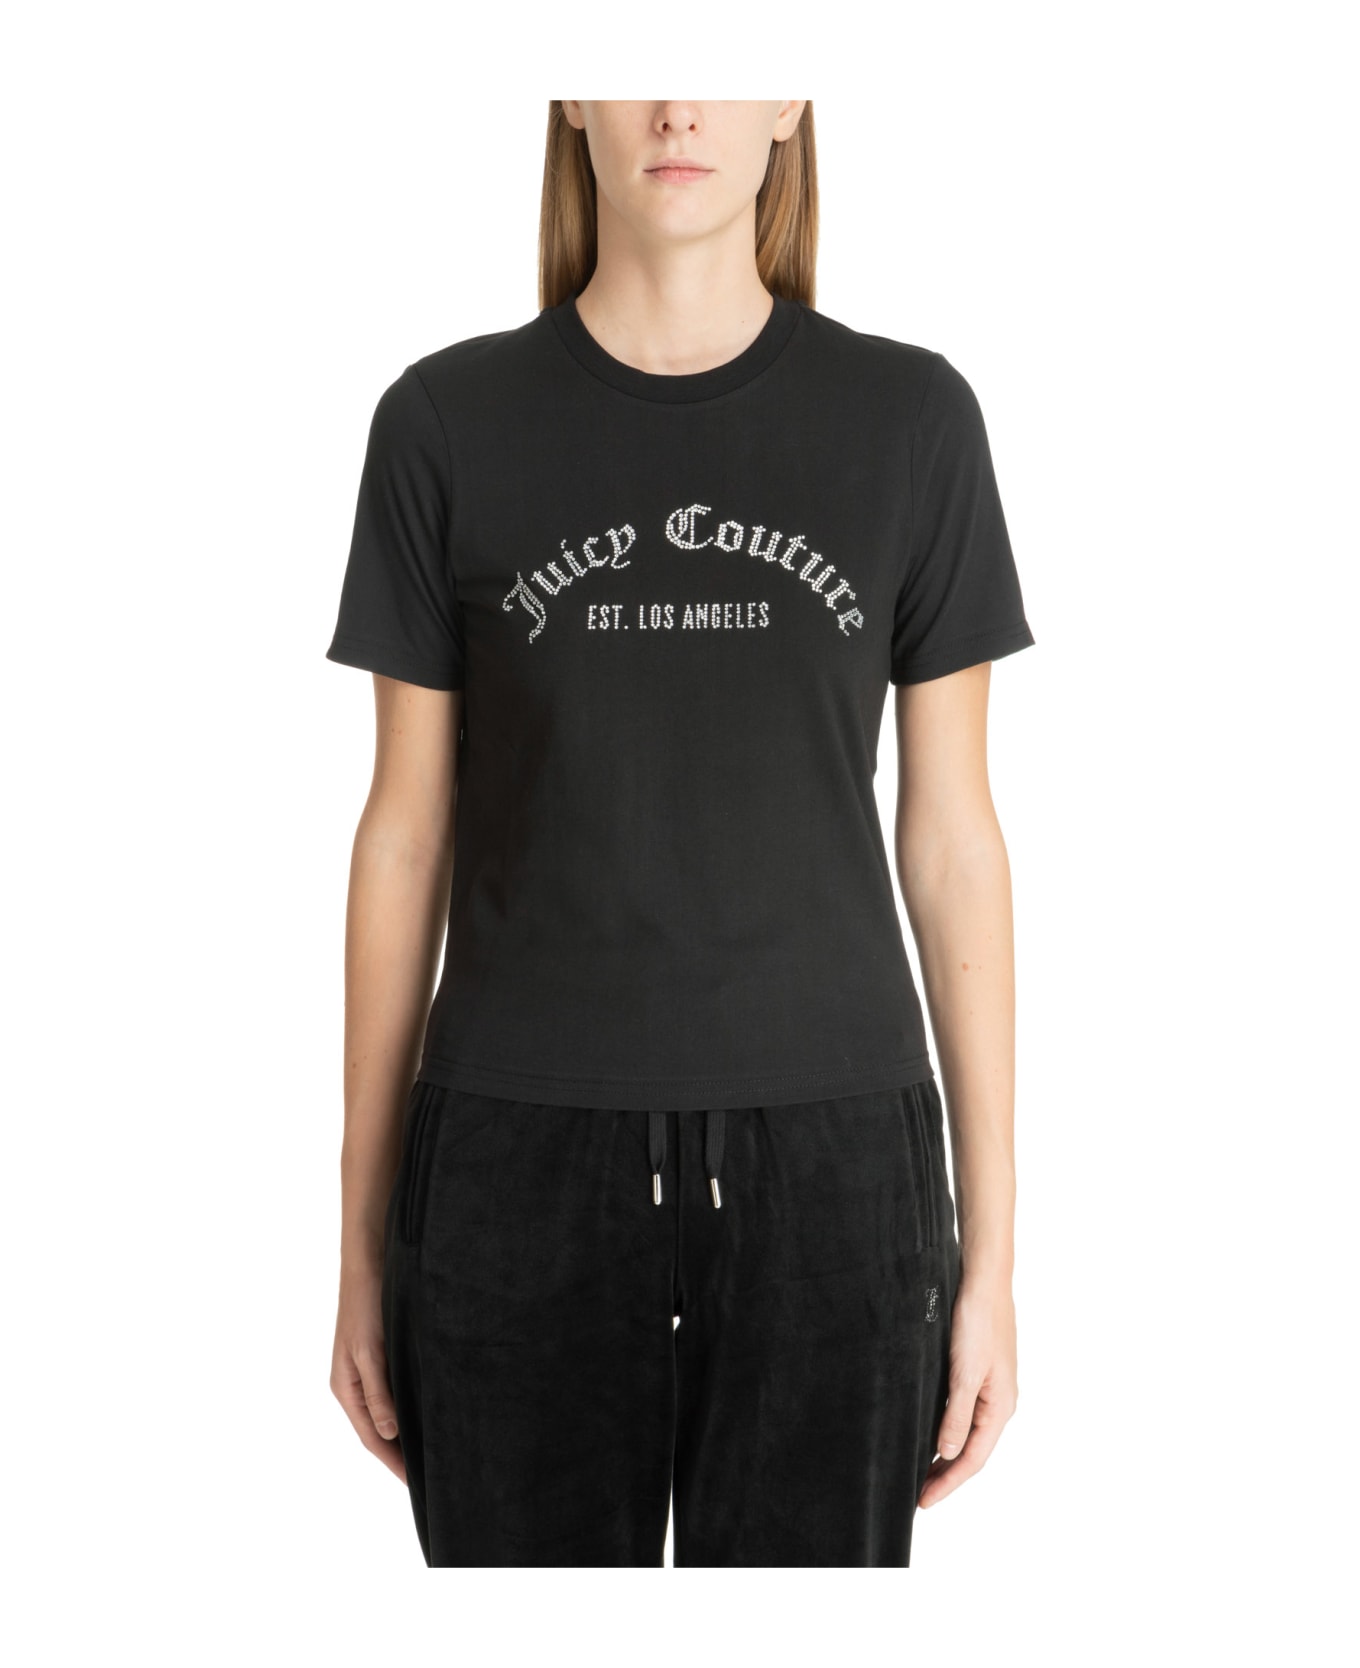 Juicy Couture Noah Cotton T-shirt - Black